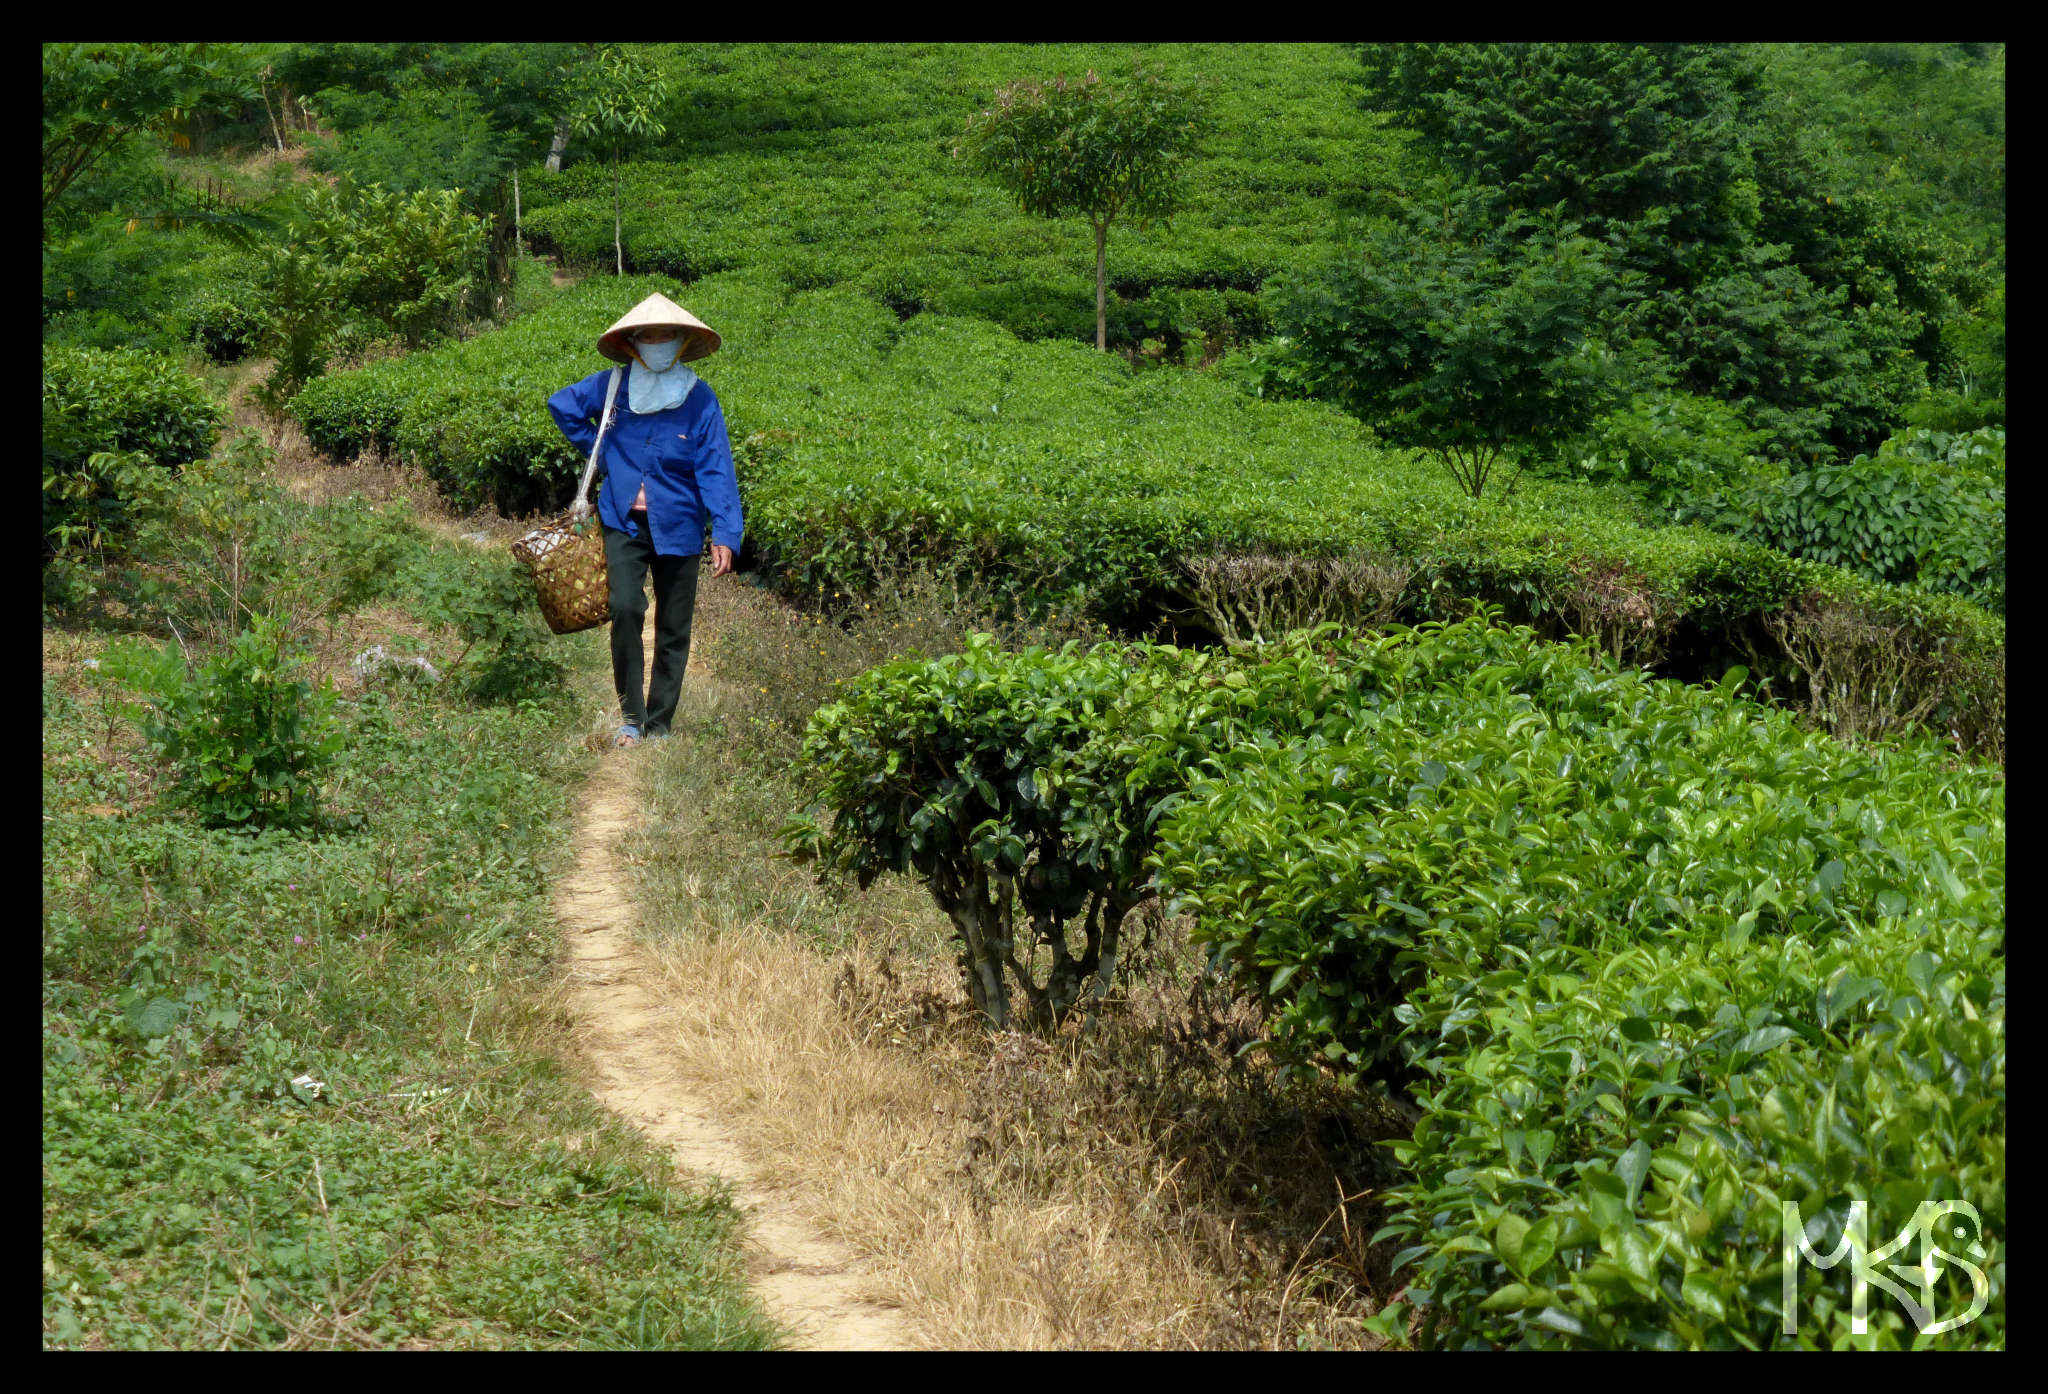 Tea plantation, Vietnam